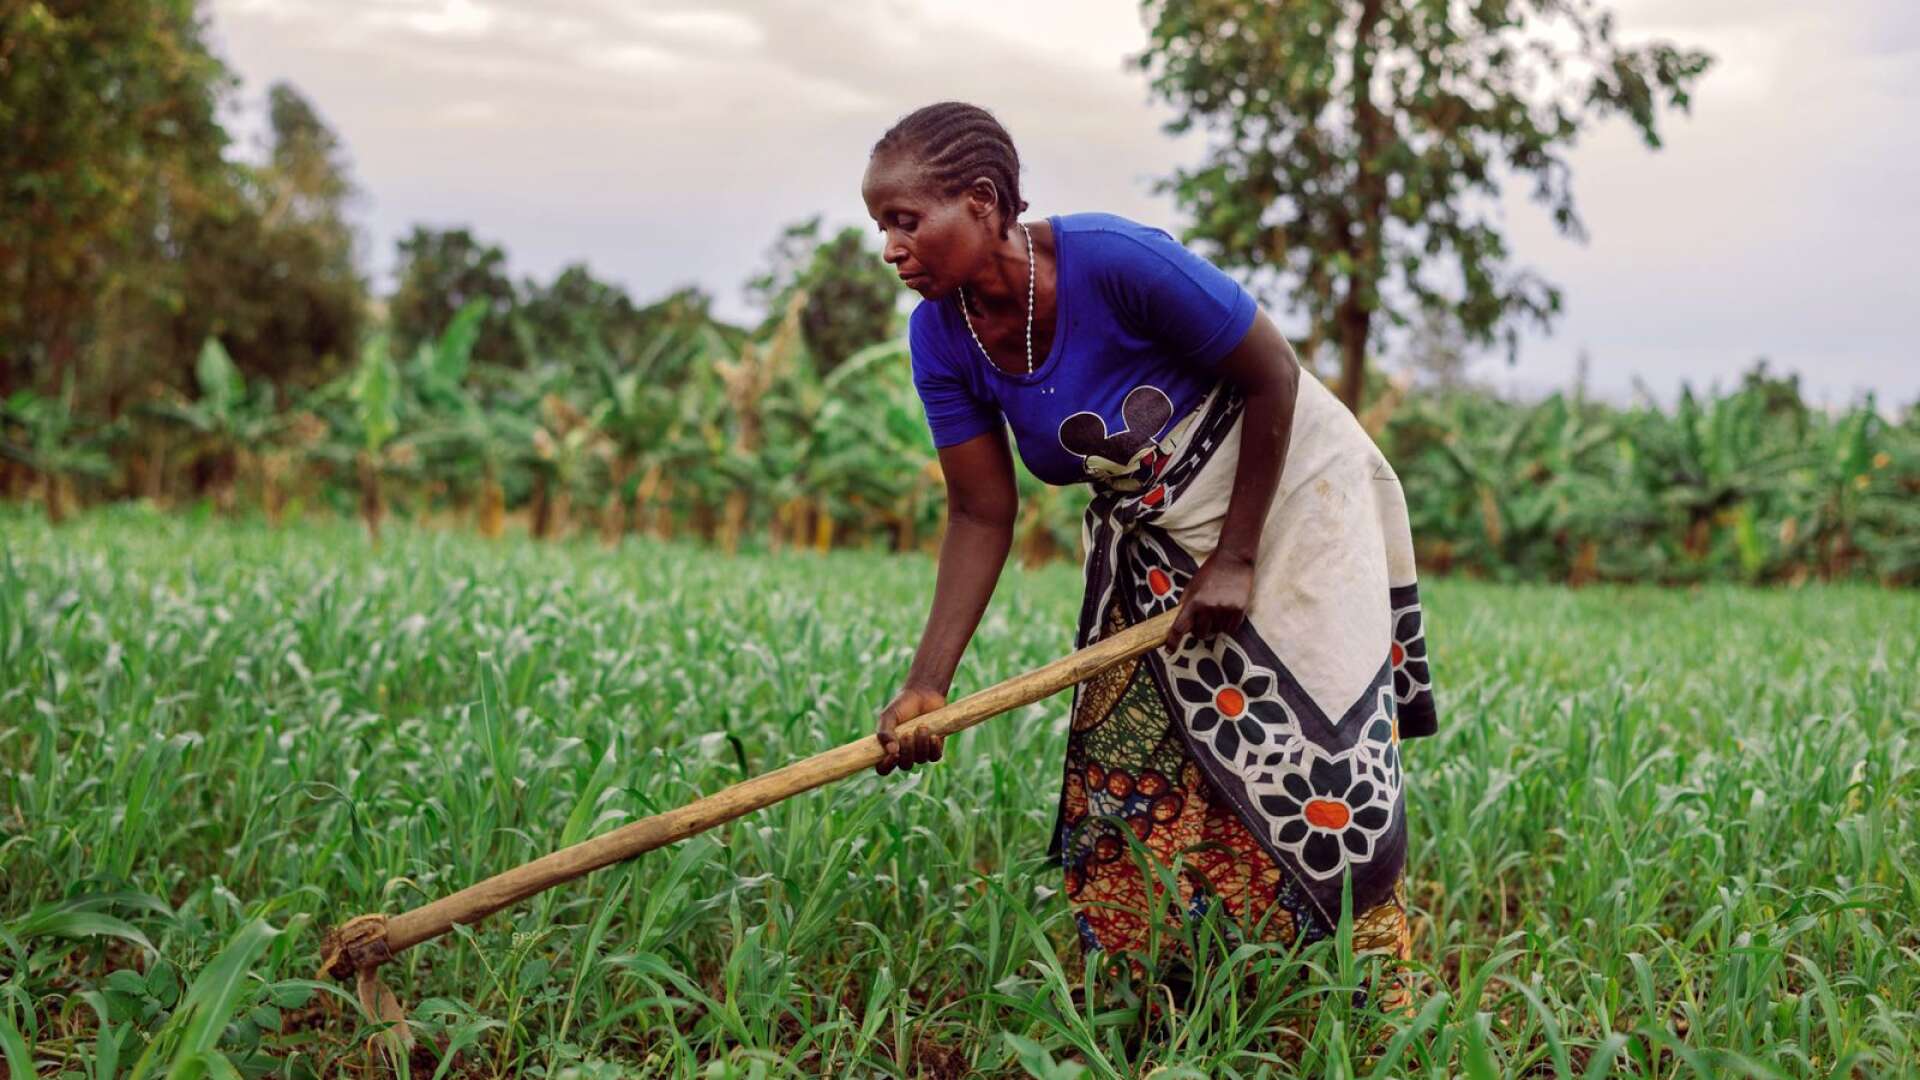 Två miljarder människor saknar trygg tillgång till tillräckligt med mat. Majoriteten av dem lever, liksom bonden Aulelia Leonidas i Tanzania, på landsbygden och livnär sig på jordbruk.